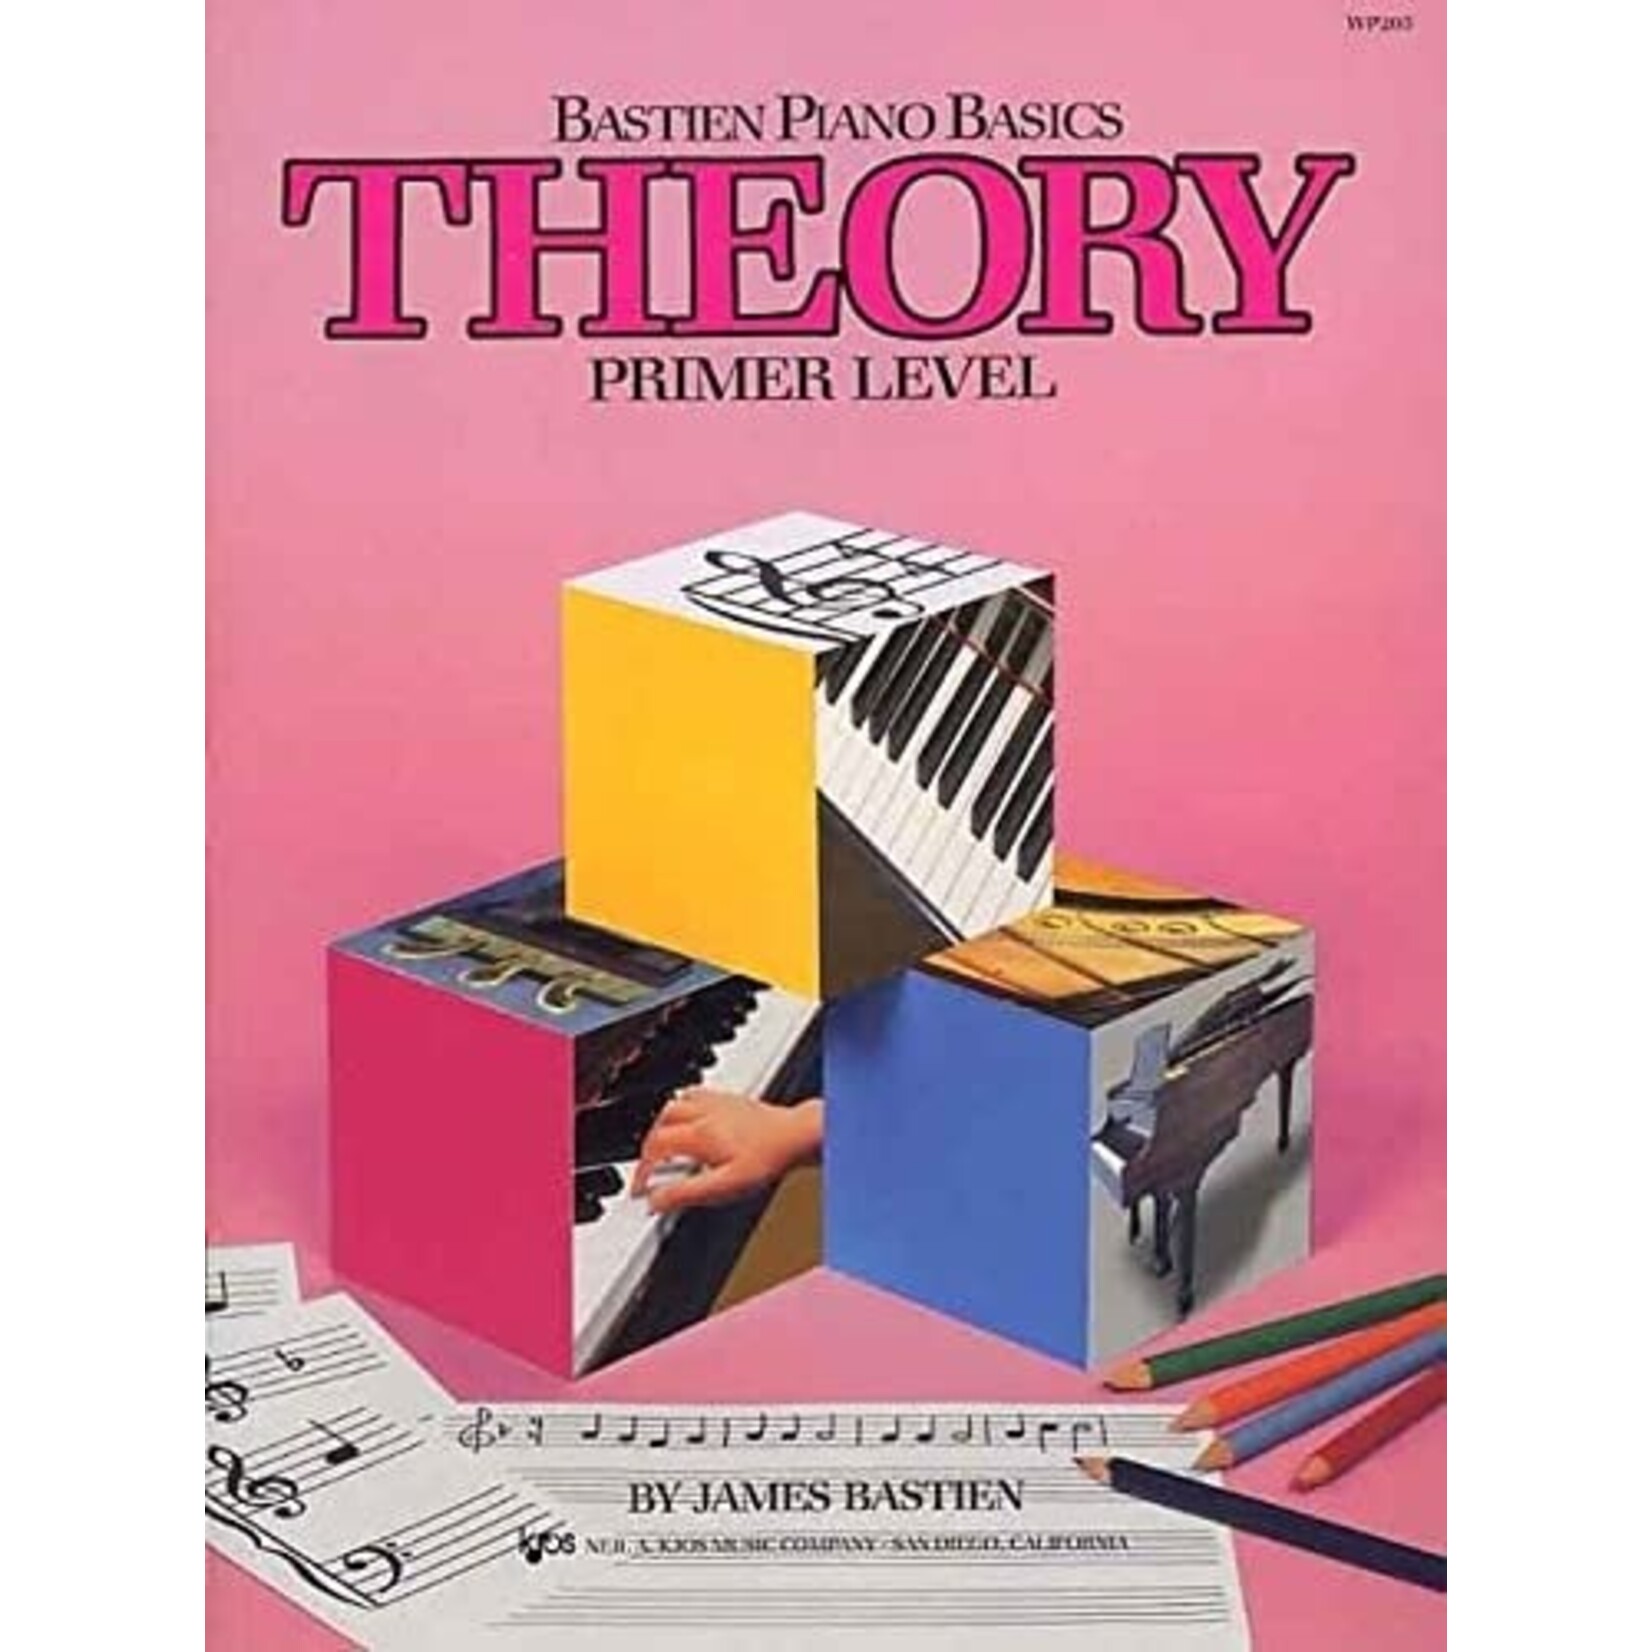 Bastien Piano Basics WP205 - Theory - Primer Level